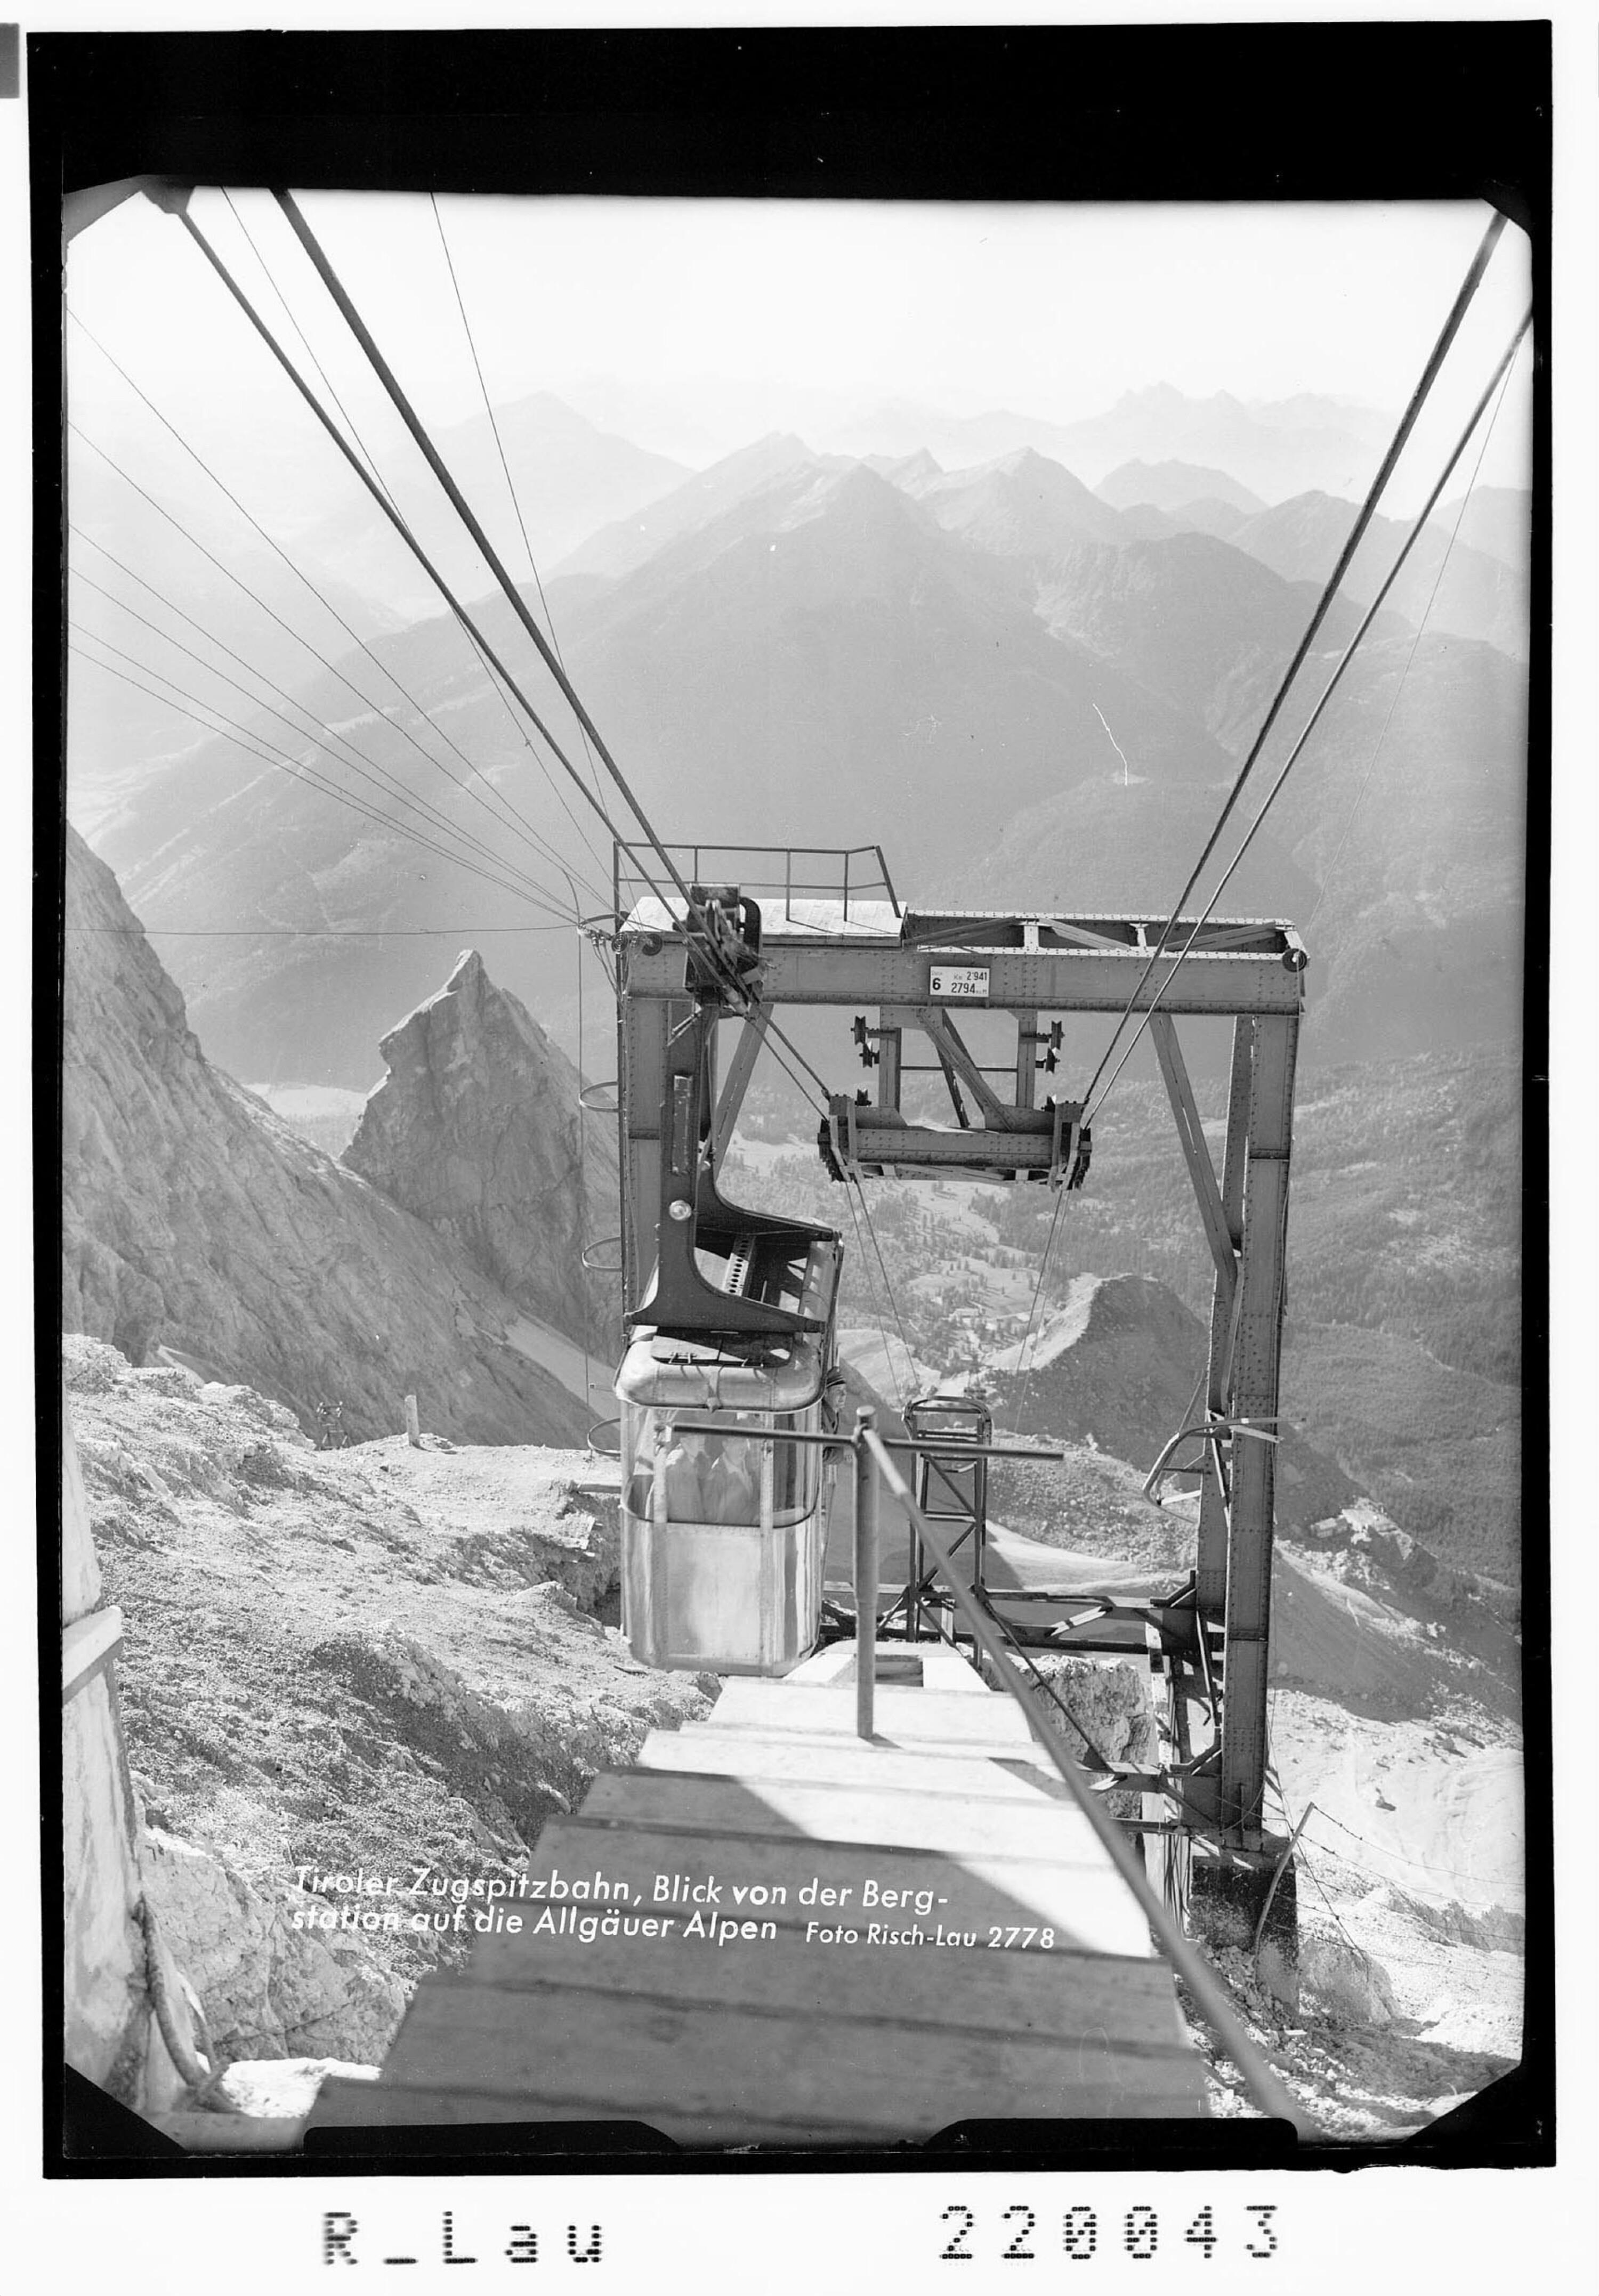 Tiroler Zugspitzbahn / Blick von der Bergstation auf die Allgäuer Alpen></div>


    <hr>
    <div class=